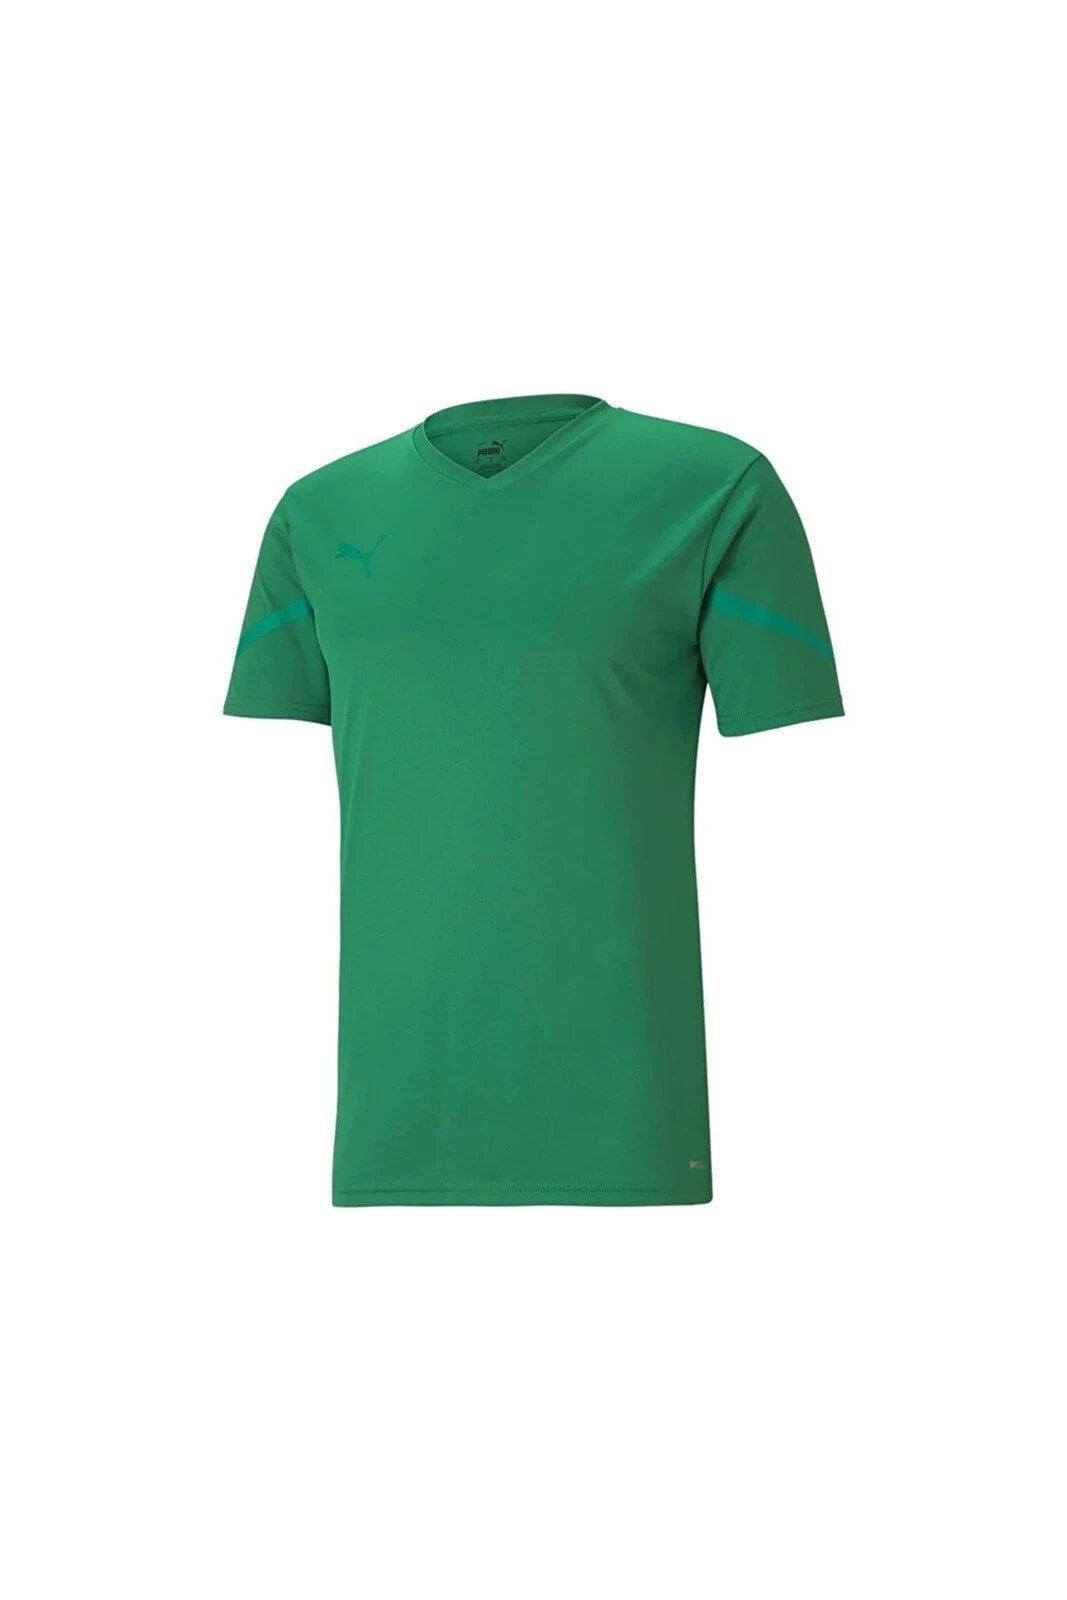 Teamflash Jersey Erkek Futbol Forması 70439405 Yeşil